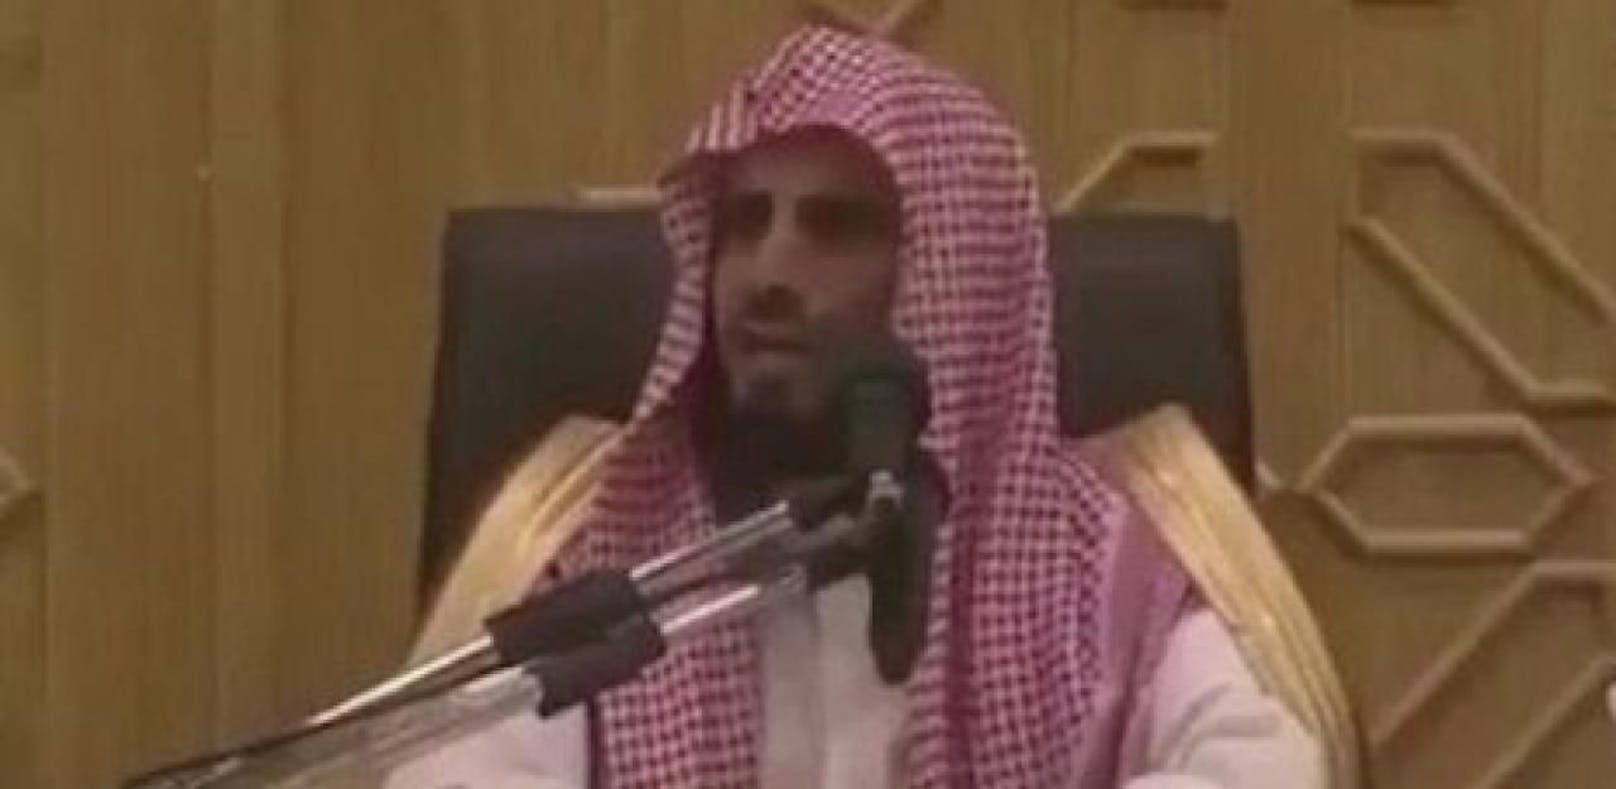 Ultrakonservativer Prediger: Saad al-Hidschri erklärt in einem Video seine Theorie über weibliche Gehirne. 